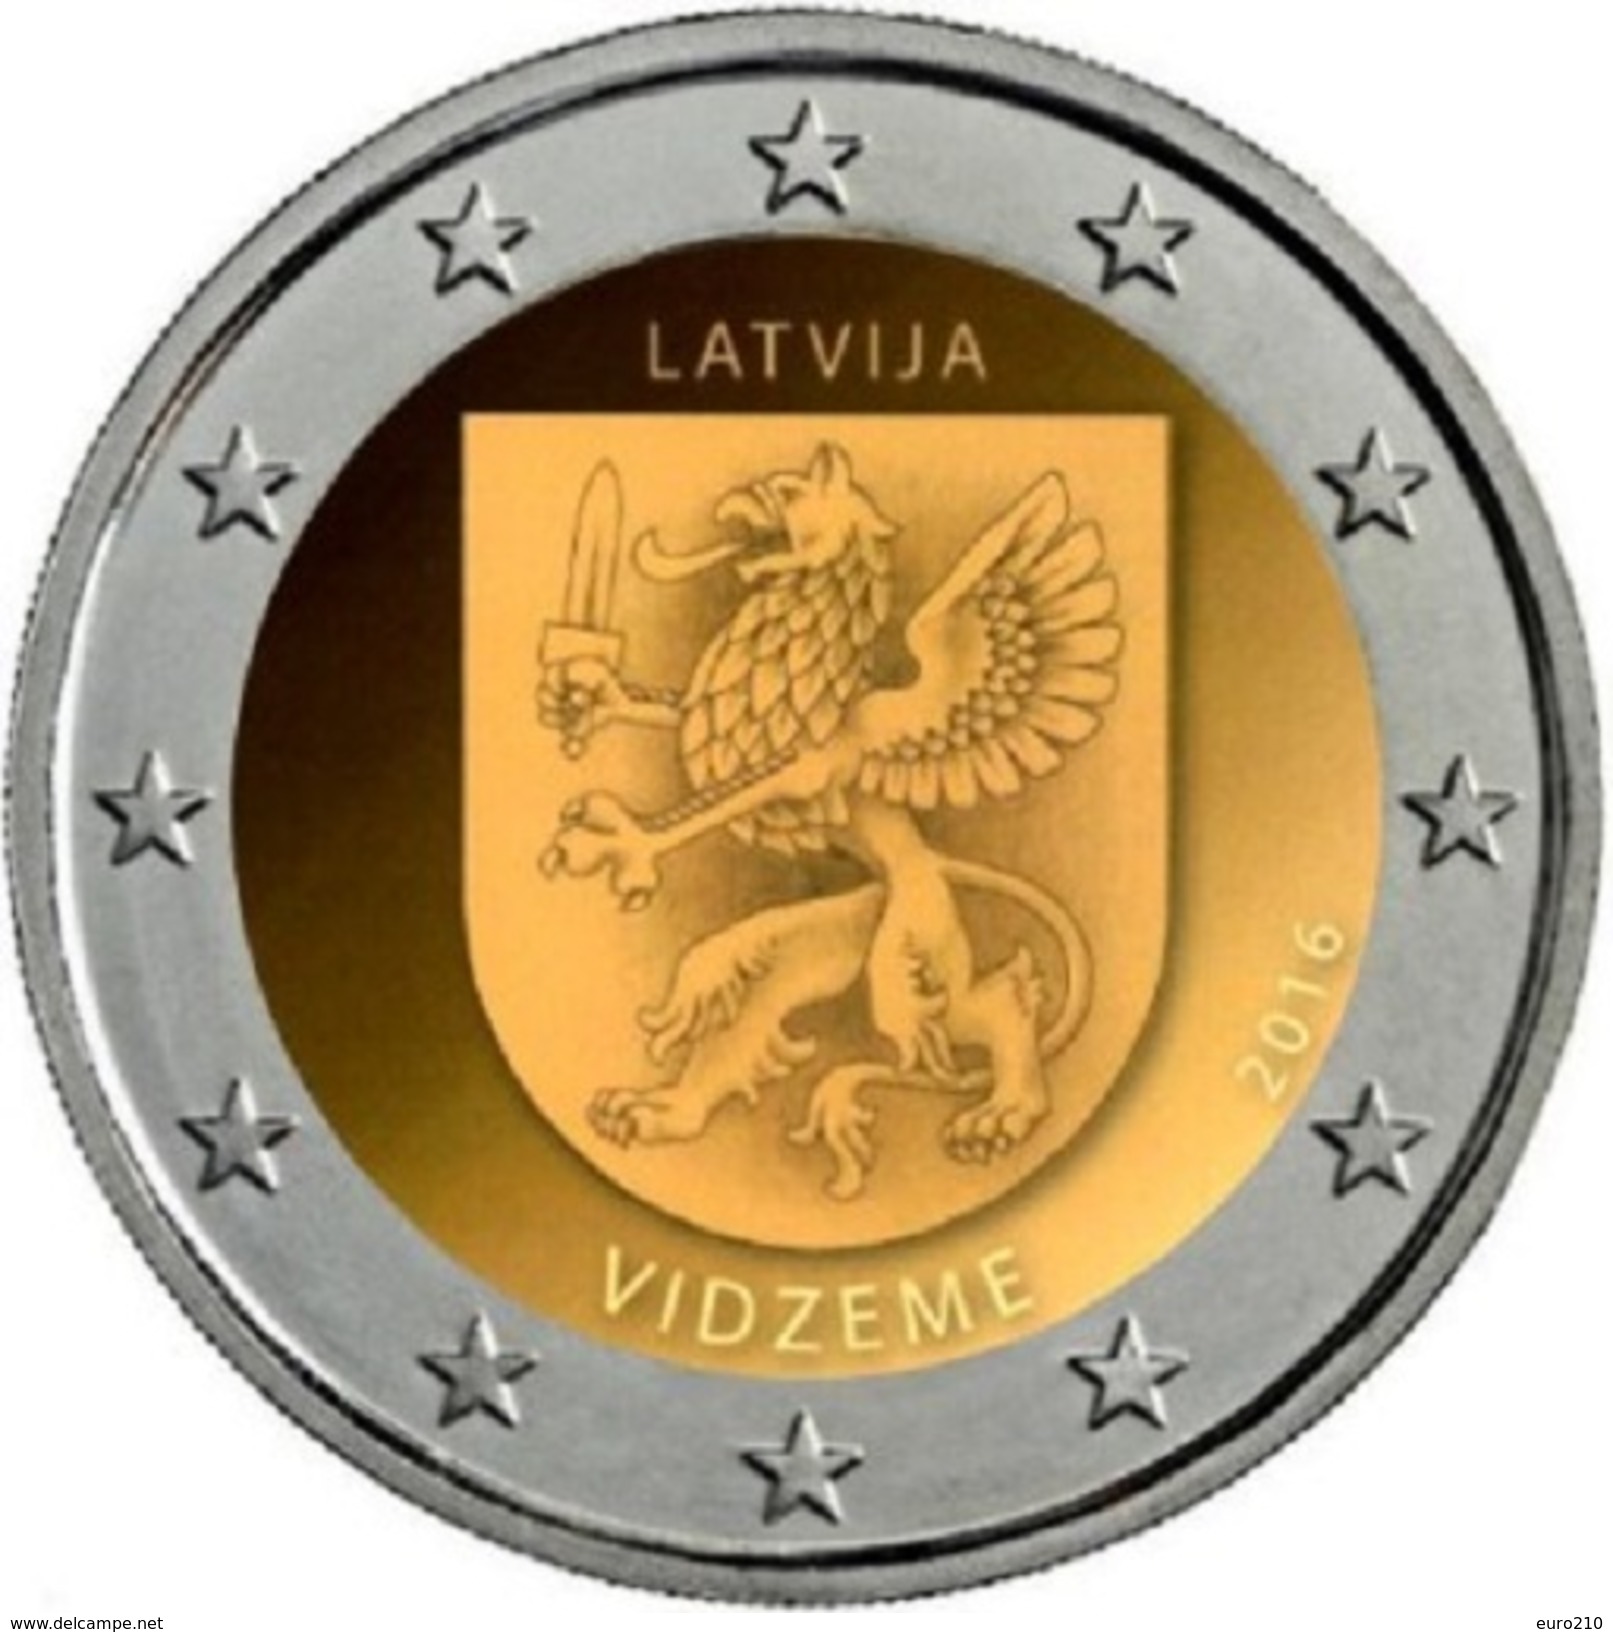 LETTONIE - 2 Euro 2016 - Vidzeme - New!!! - Lettonie